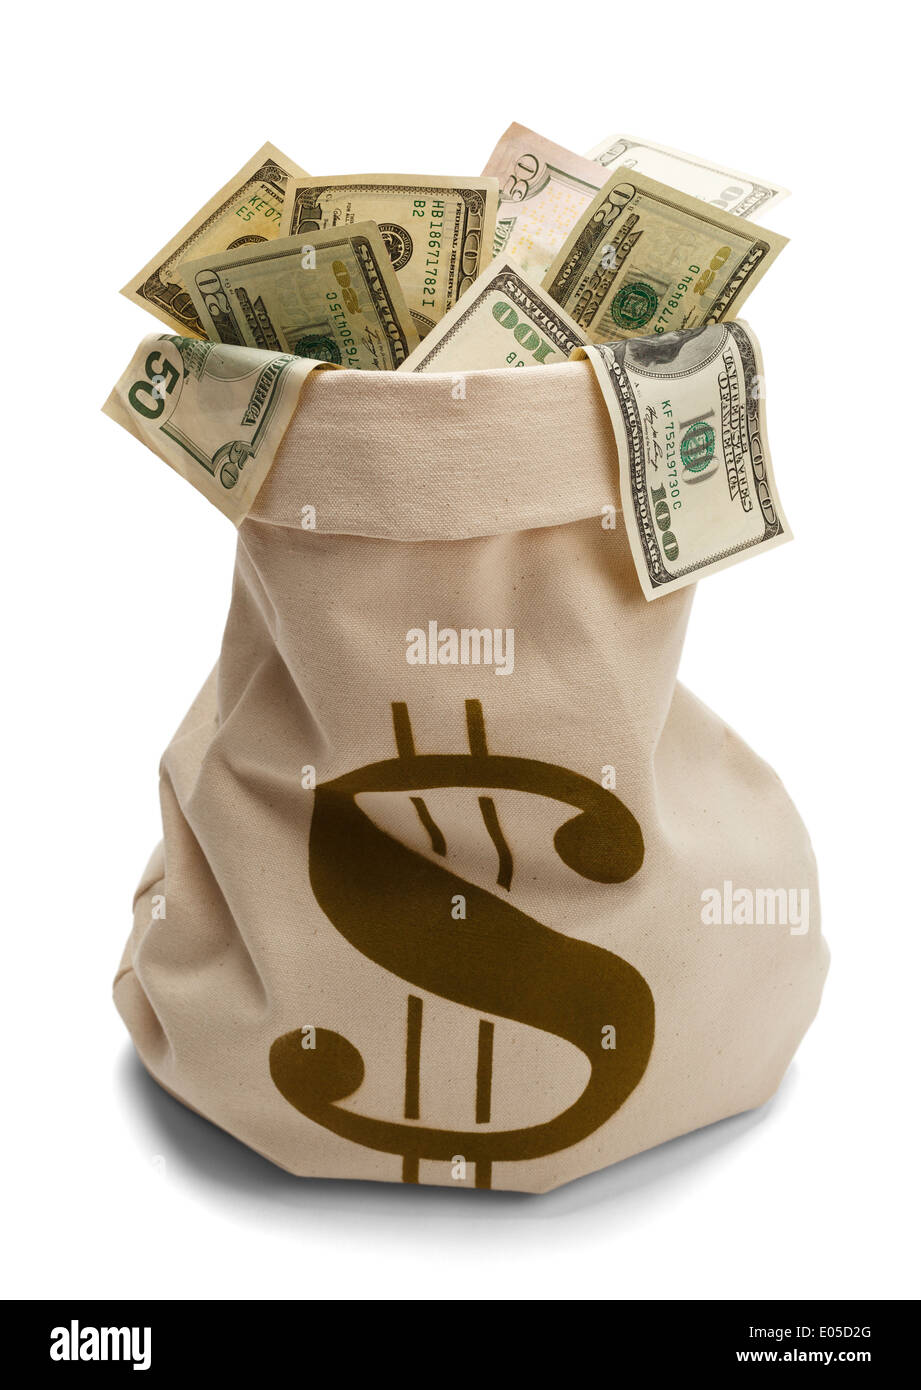 Banca borsa piena di noi denaro con denaro il simbolo $ isolato su uno sfondo bianco. Foto Stock